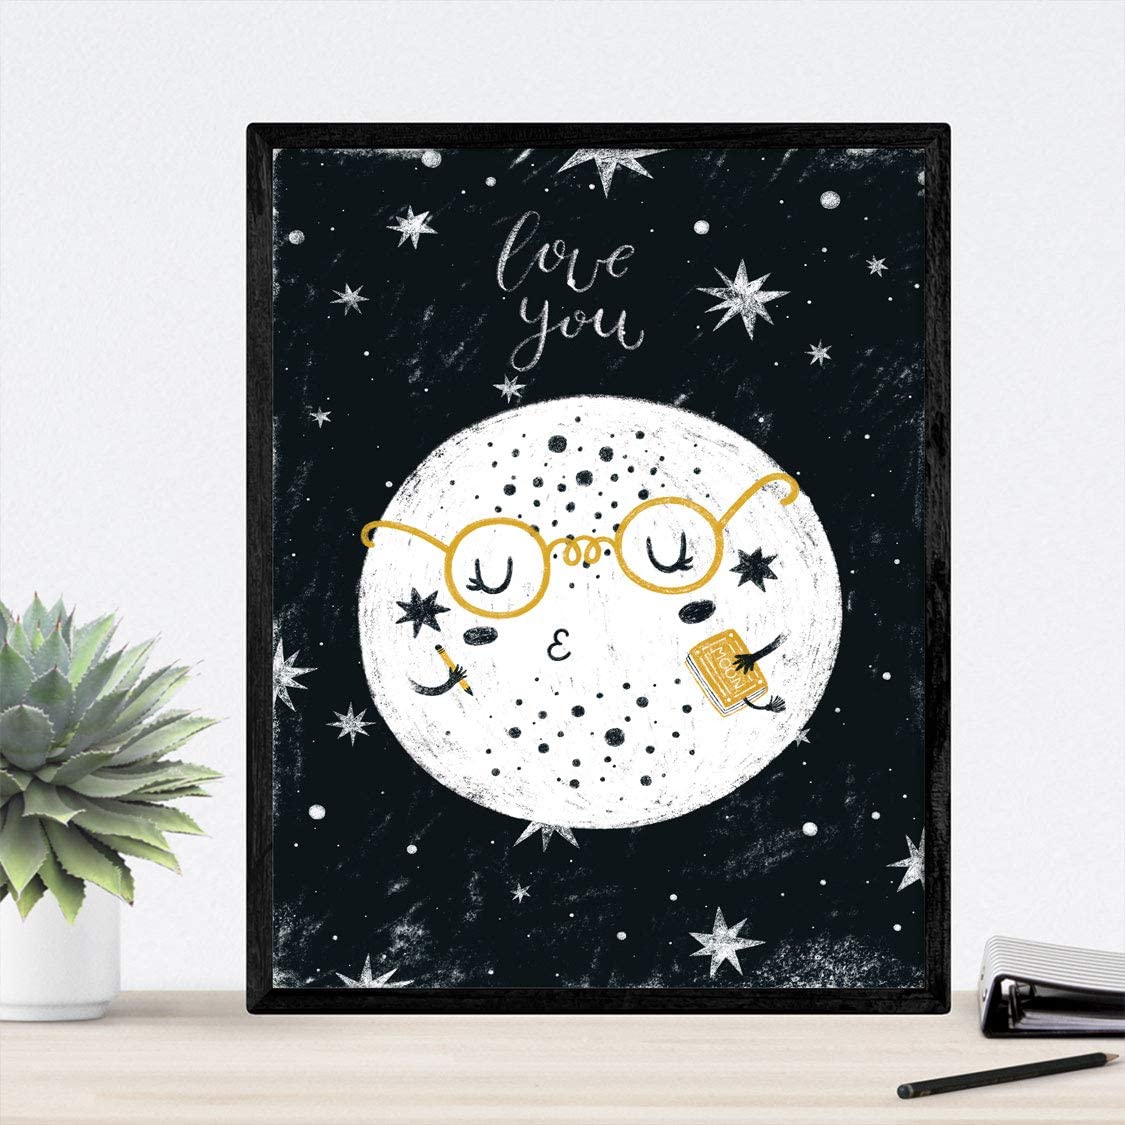 Esta es una colección de láminas con dibujos e ilustraciones de la luna y el sistema solar. Los planetas y satélites están representados en blanco y negro con un diseño juvenil. Si estás buscando decorar las habitaciones de tu hogar con un estilo infanti